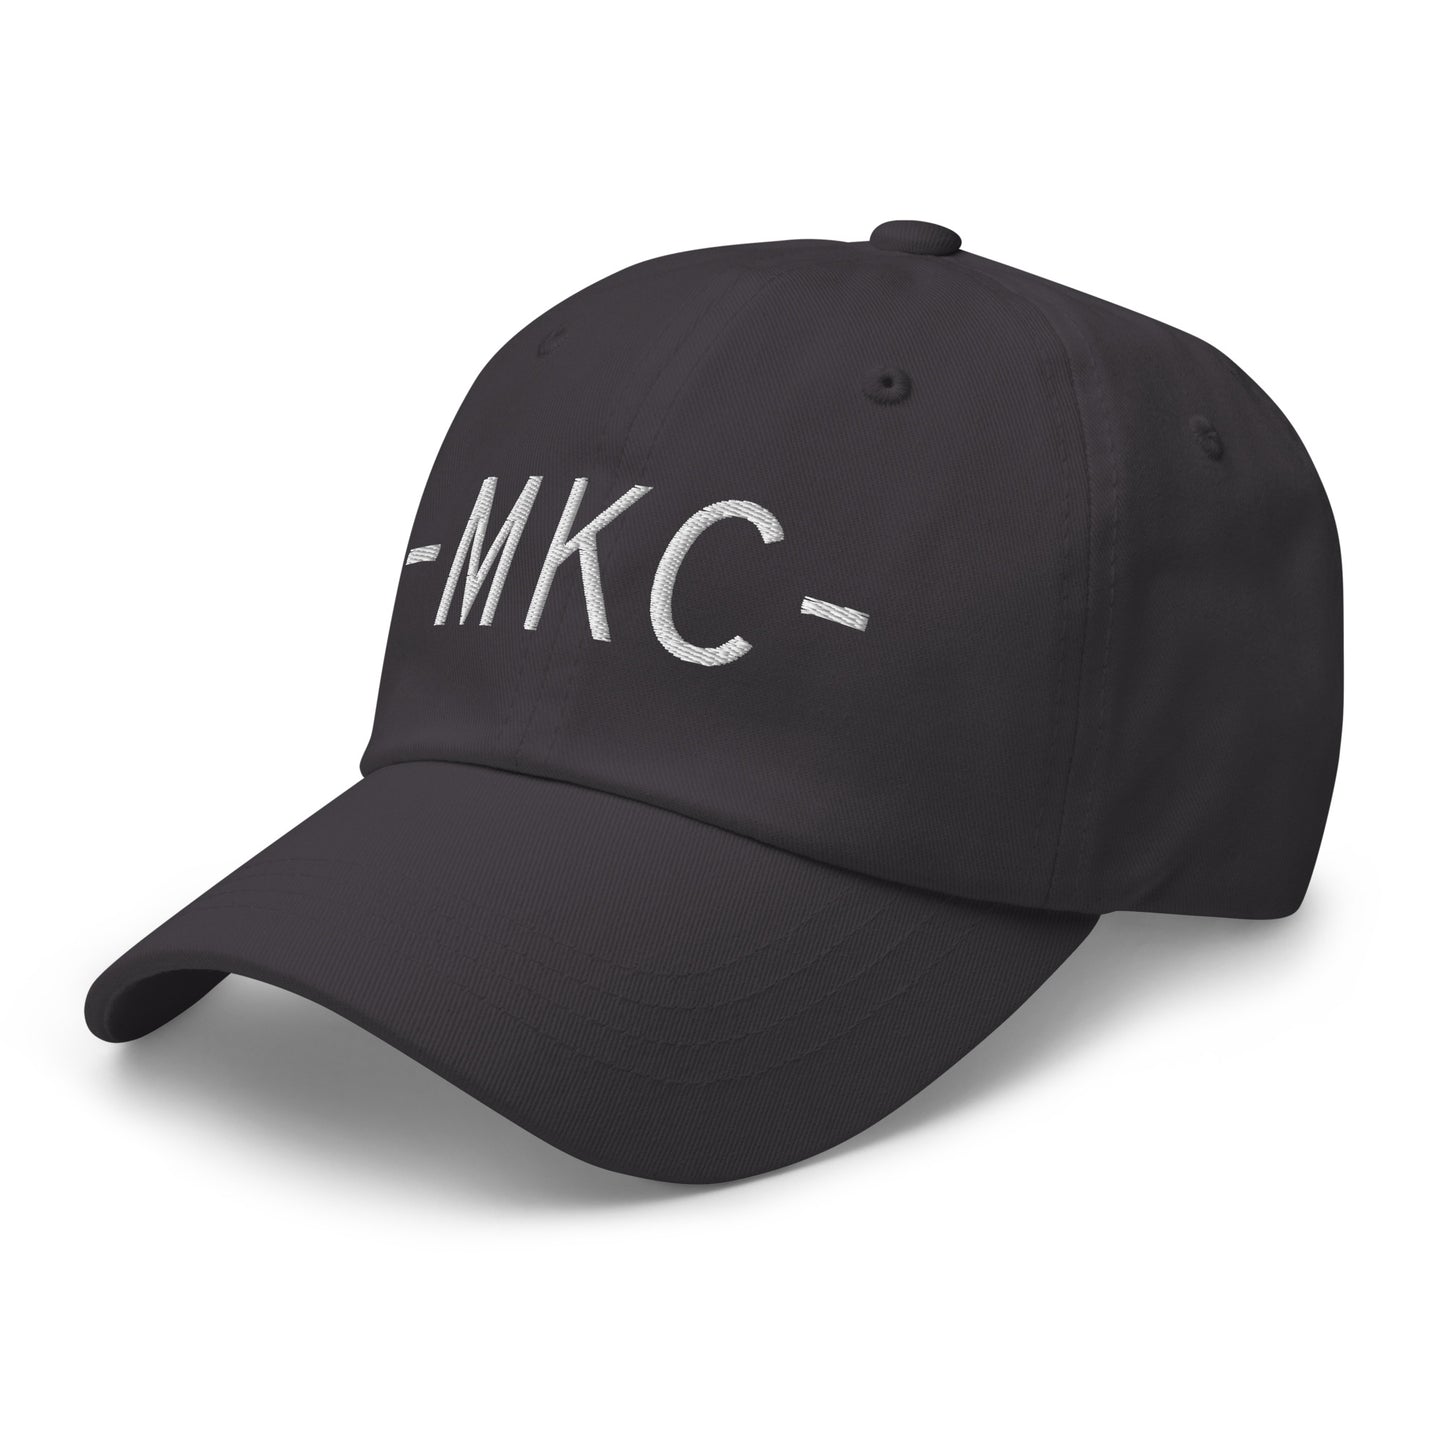 Souvenir Baseball Cap - White • MKC Kansas City • YHM Designs - Image 20